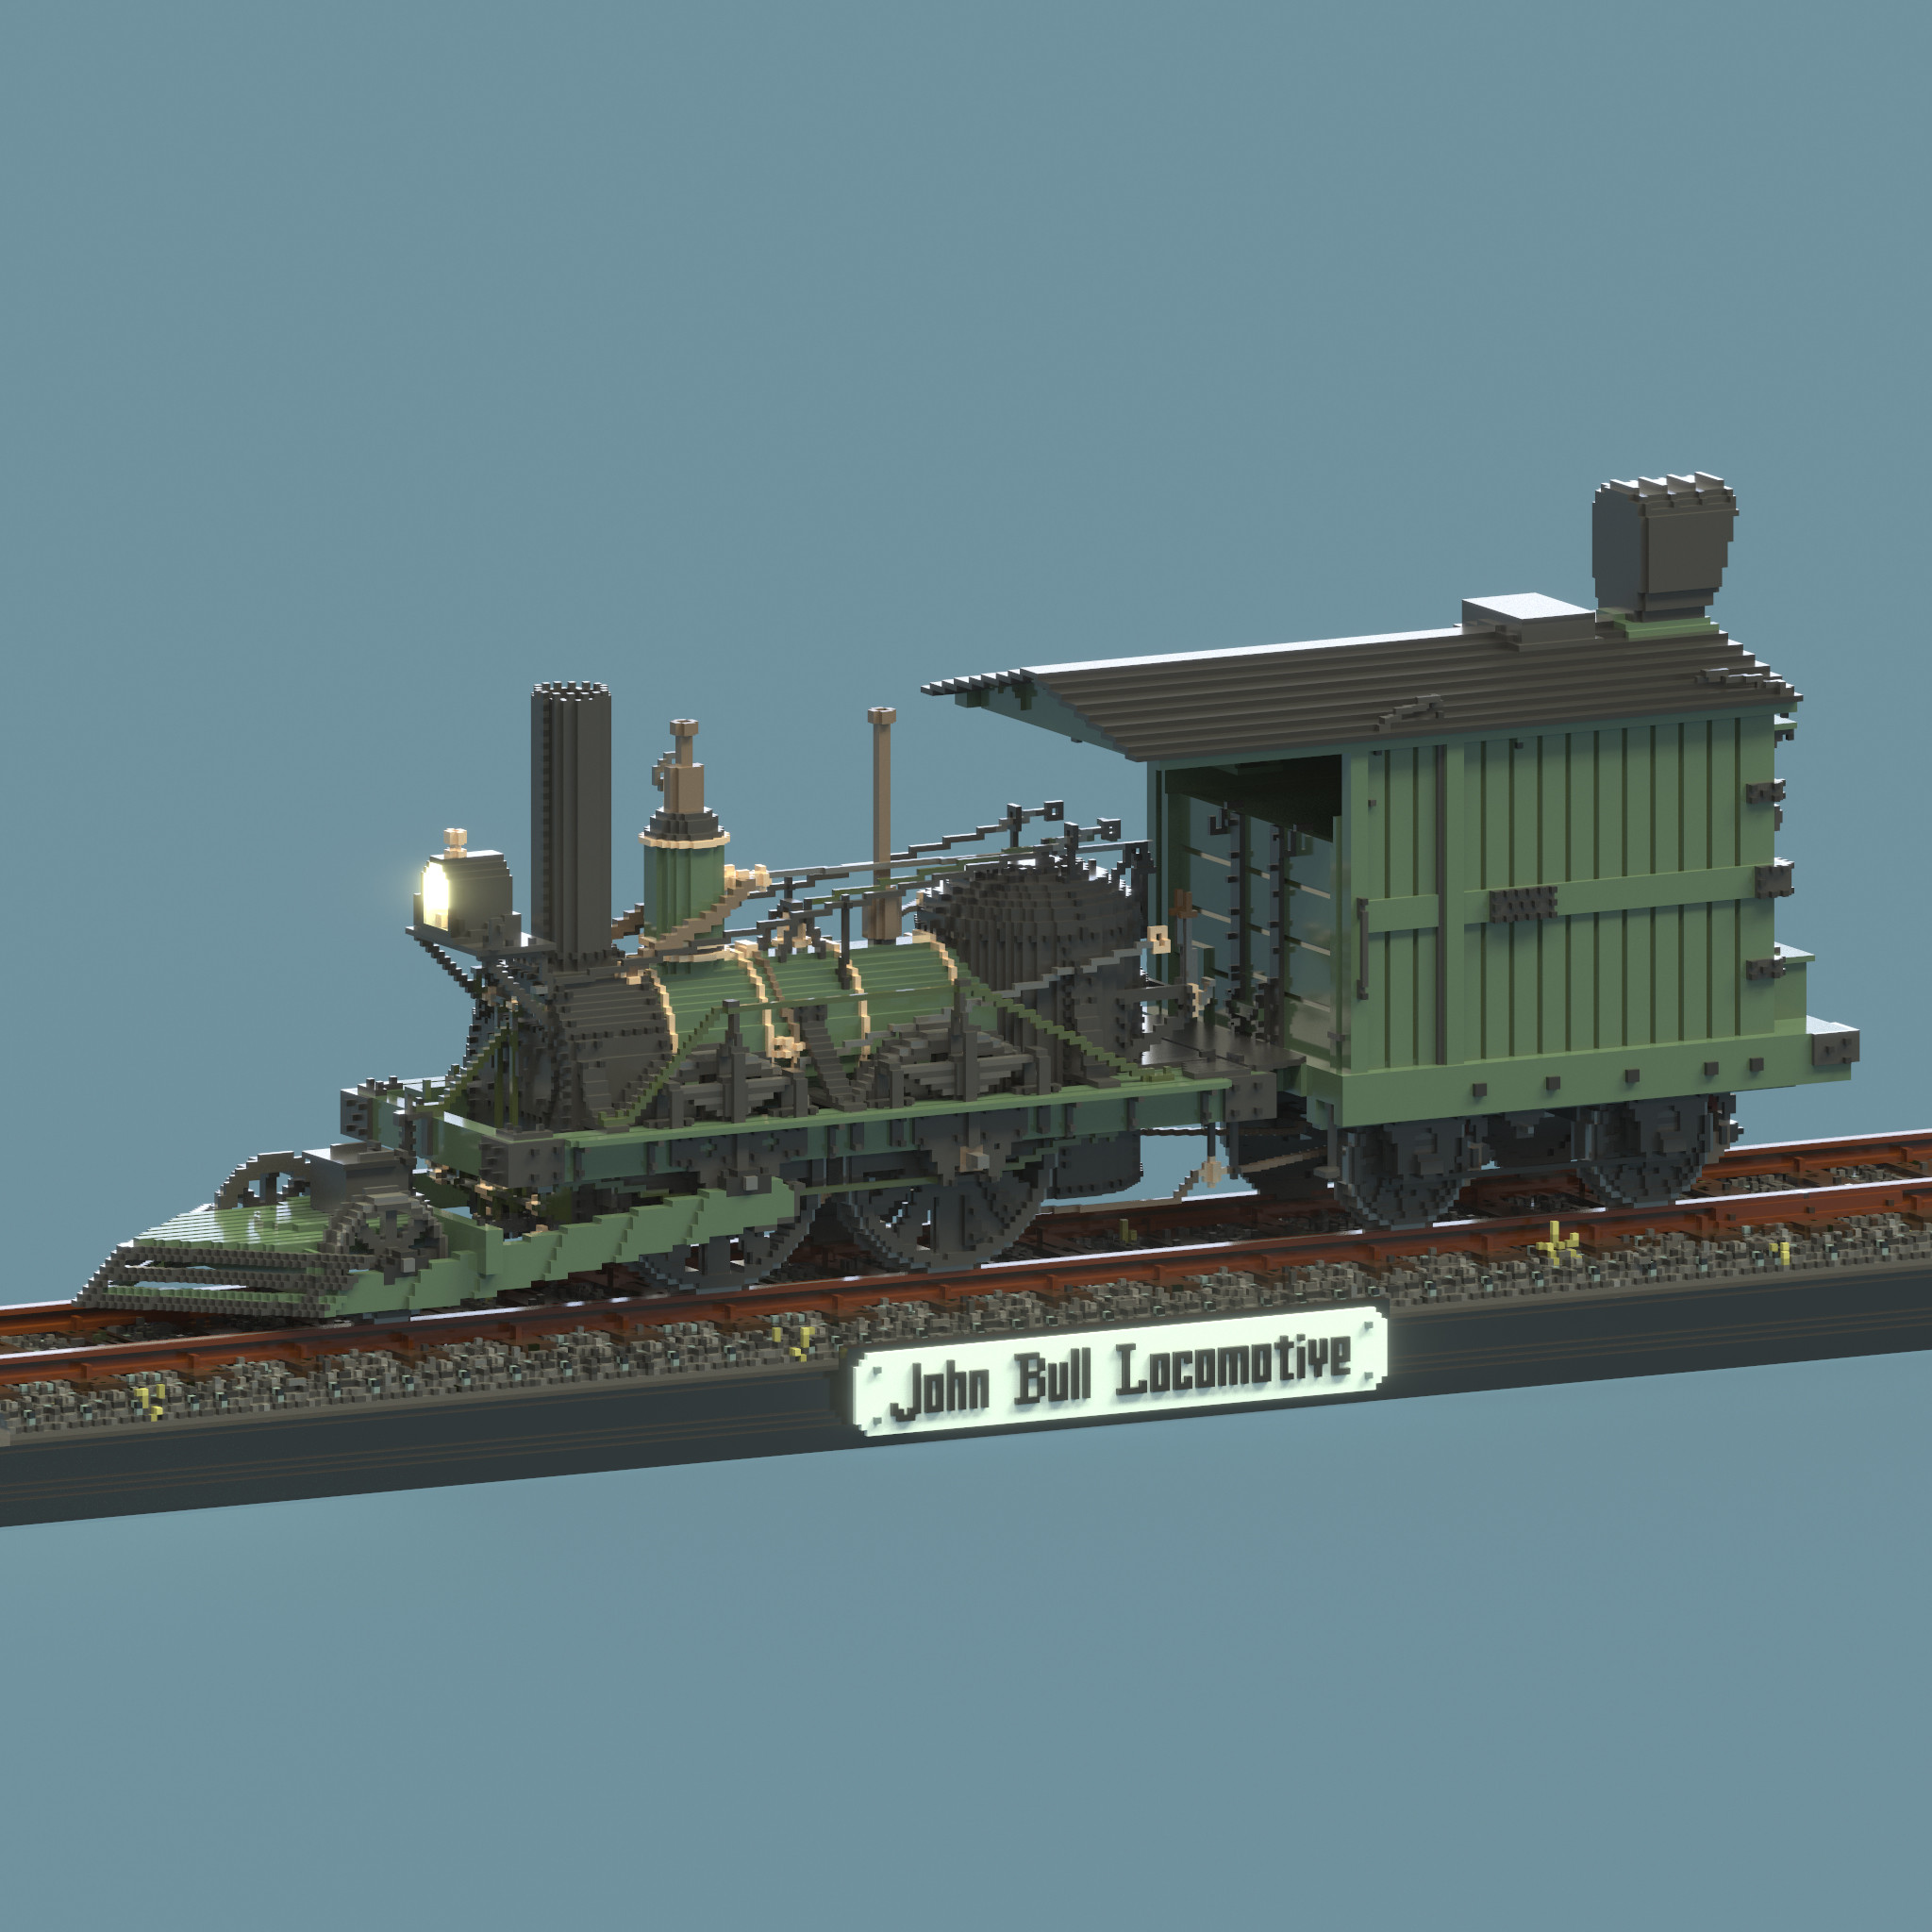 Voxel model rendering of the John Bull steam locomotive.